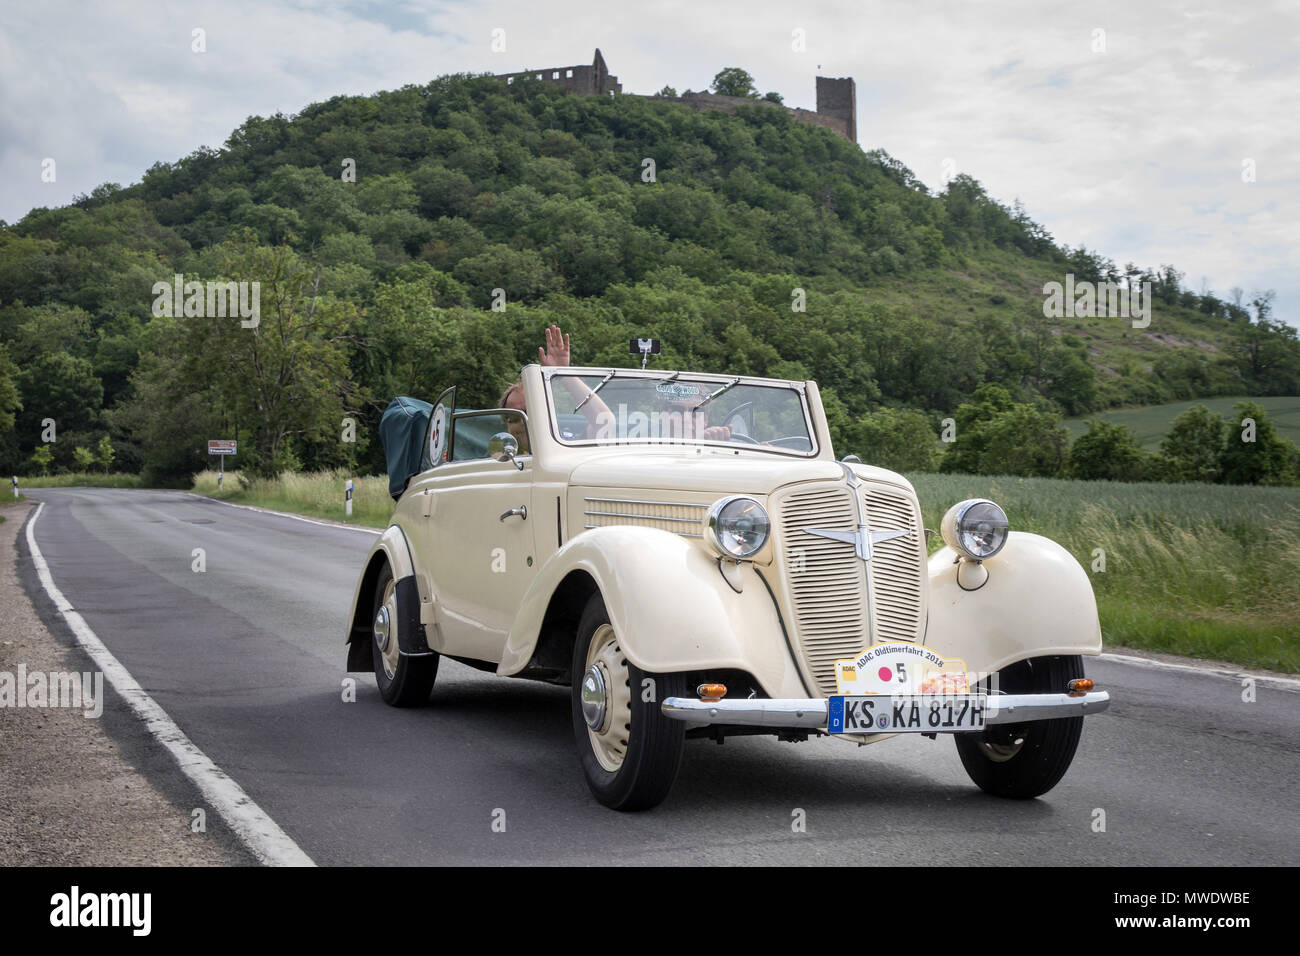 01 giugno 2018, Germania, Muehlberg: un auto classica del modello Triumph  Adler (1937) partecipa al classico Tour auto Hesse-Thuringia, guida passato  Gleichen castello su una strada di campagna. Foto: Arifoto ug/Michael  Reichel/dpa